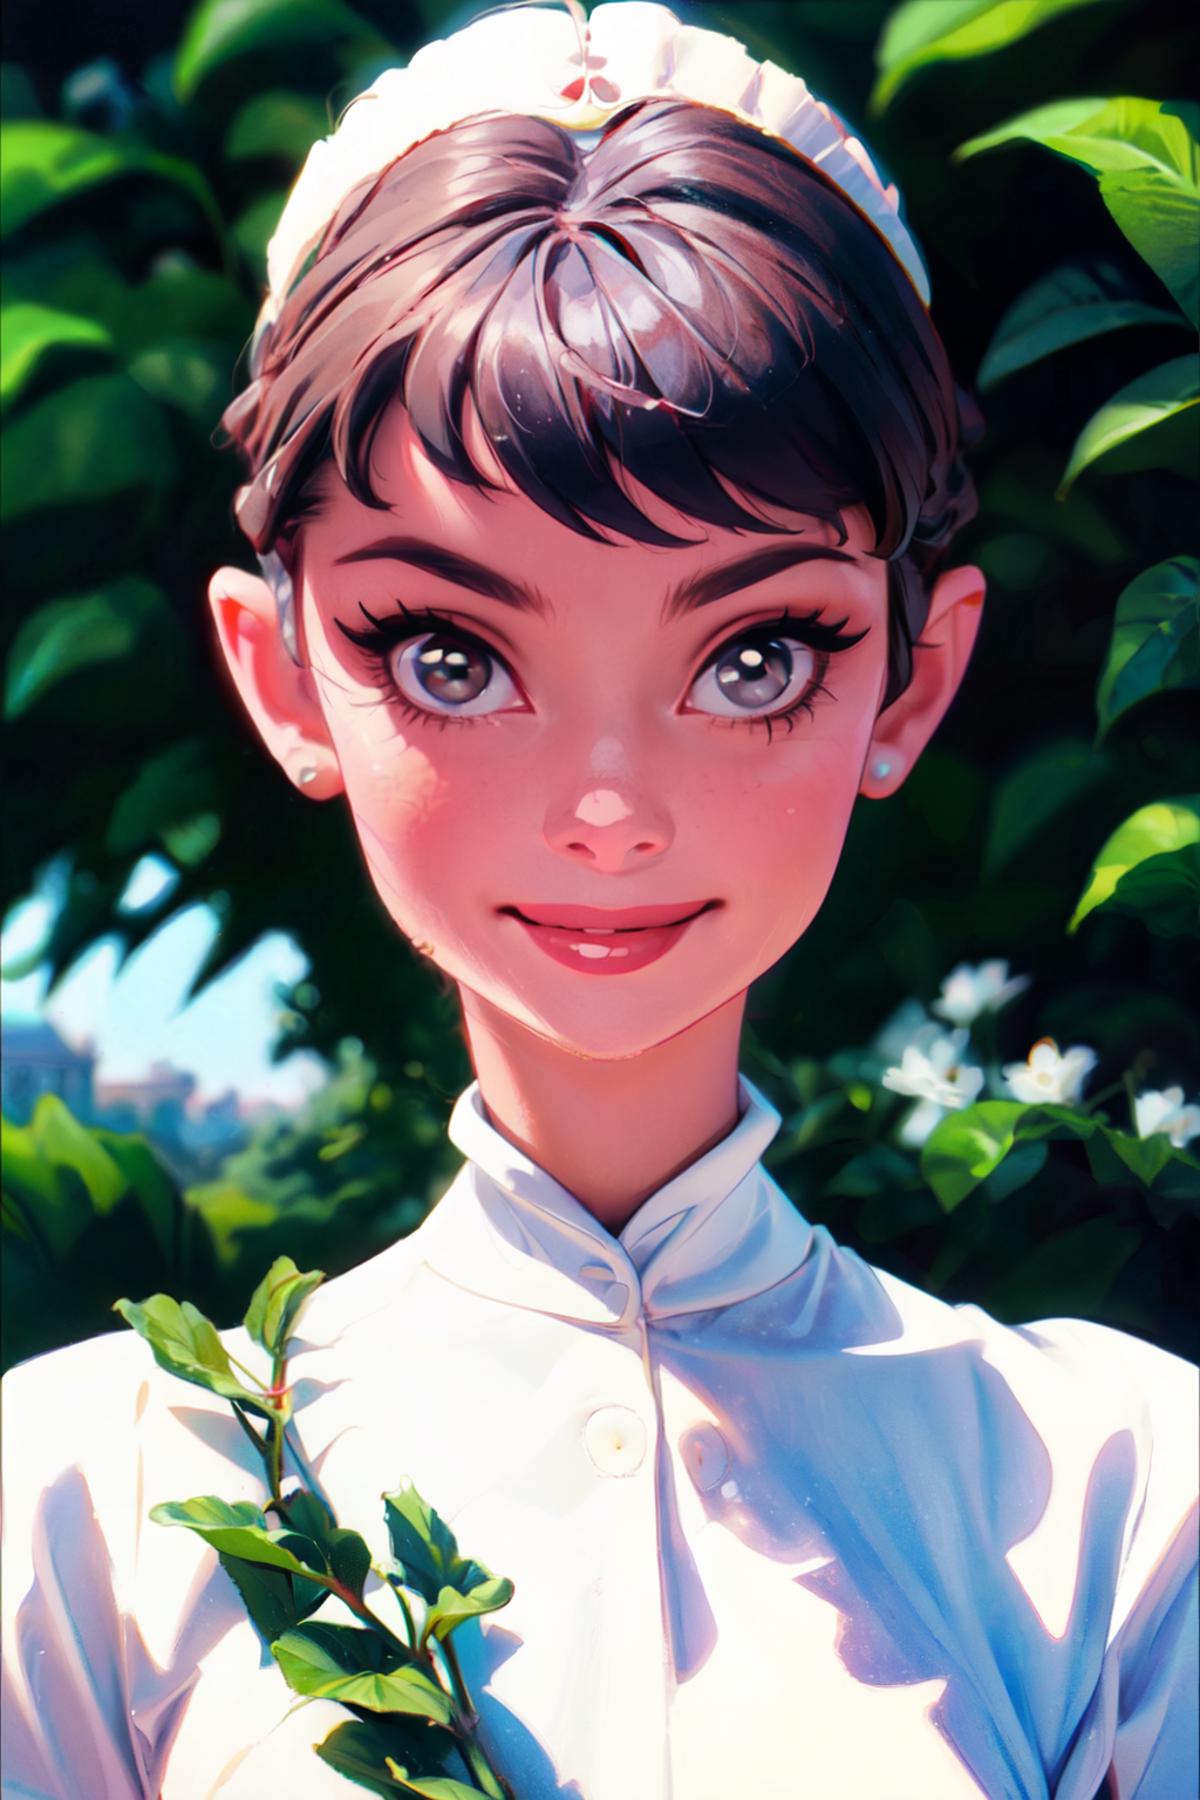 奥黛丽赫本 Audrey Hepburn  image by kokurine